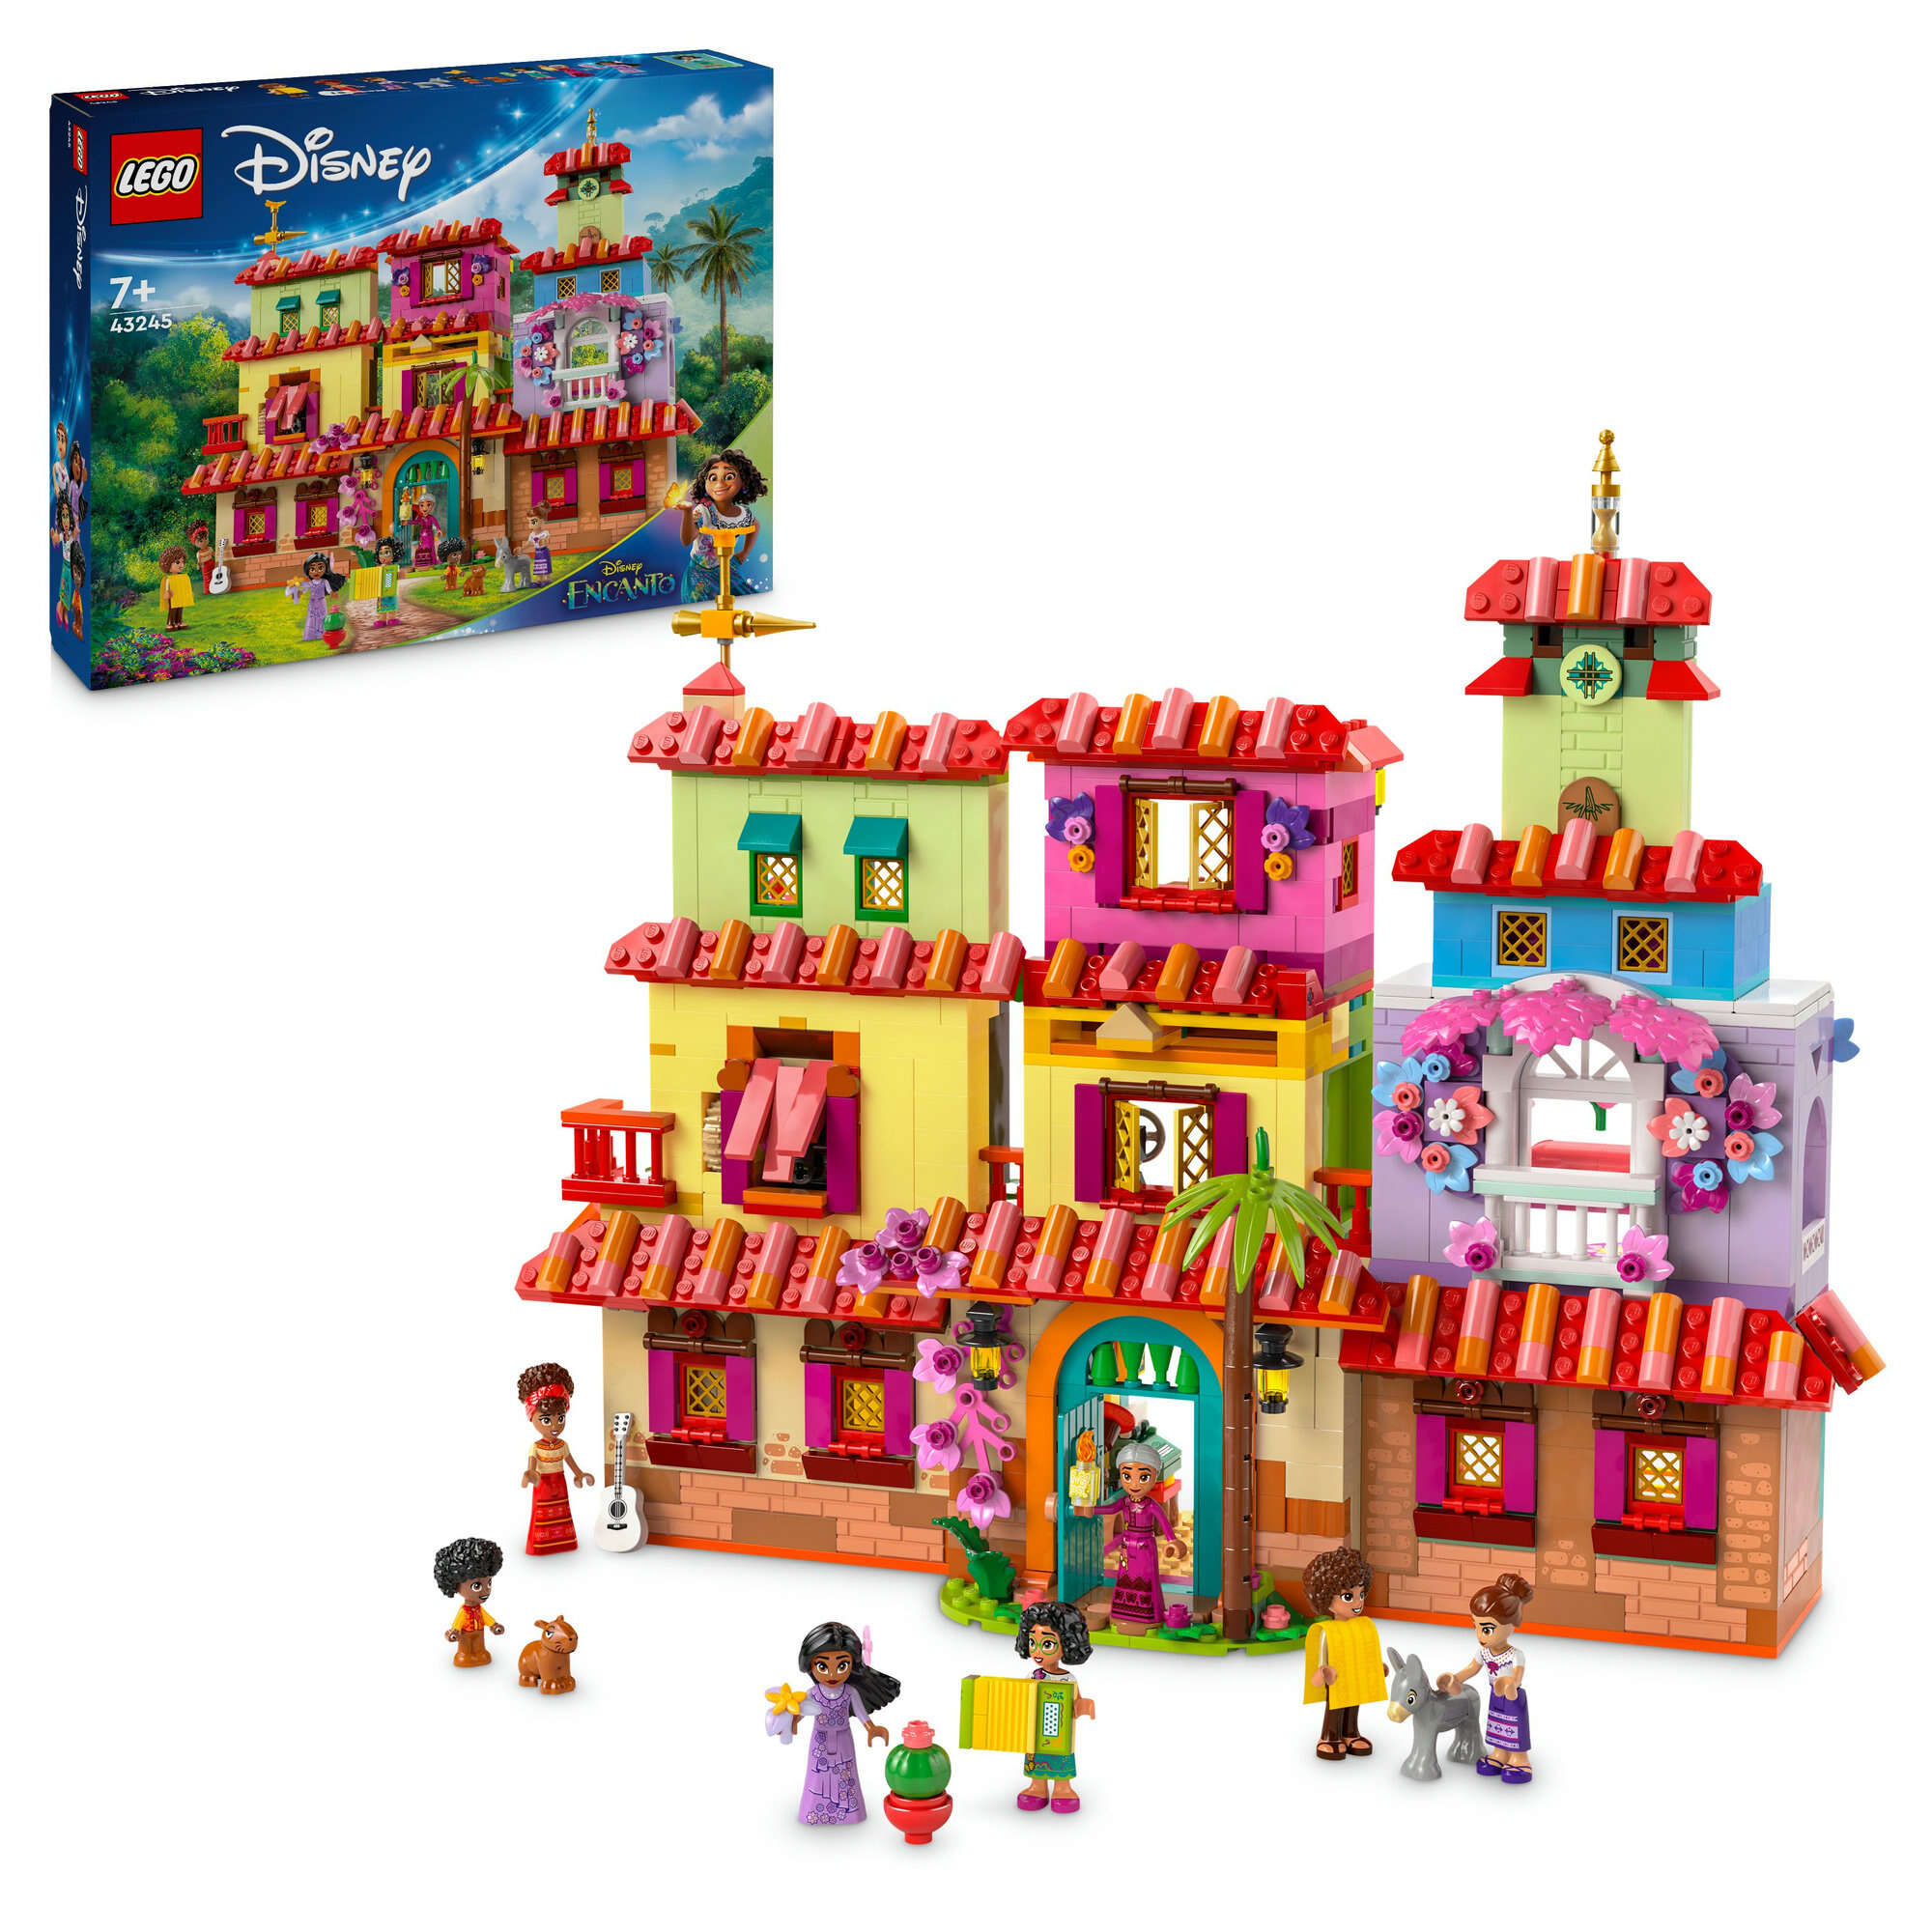 LEGO 43245 Disney Das magische Haus der Madrigals, 8 Zimmer, 6 Spielfiguren